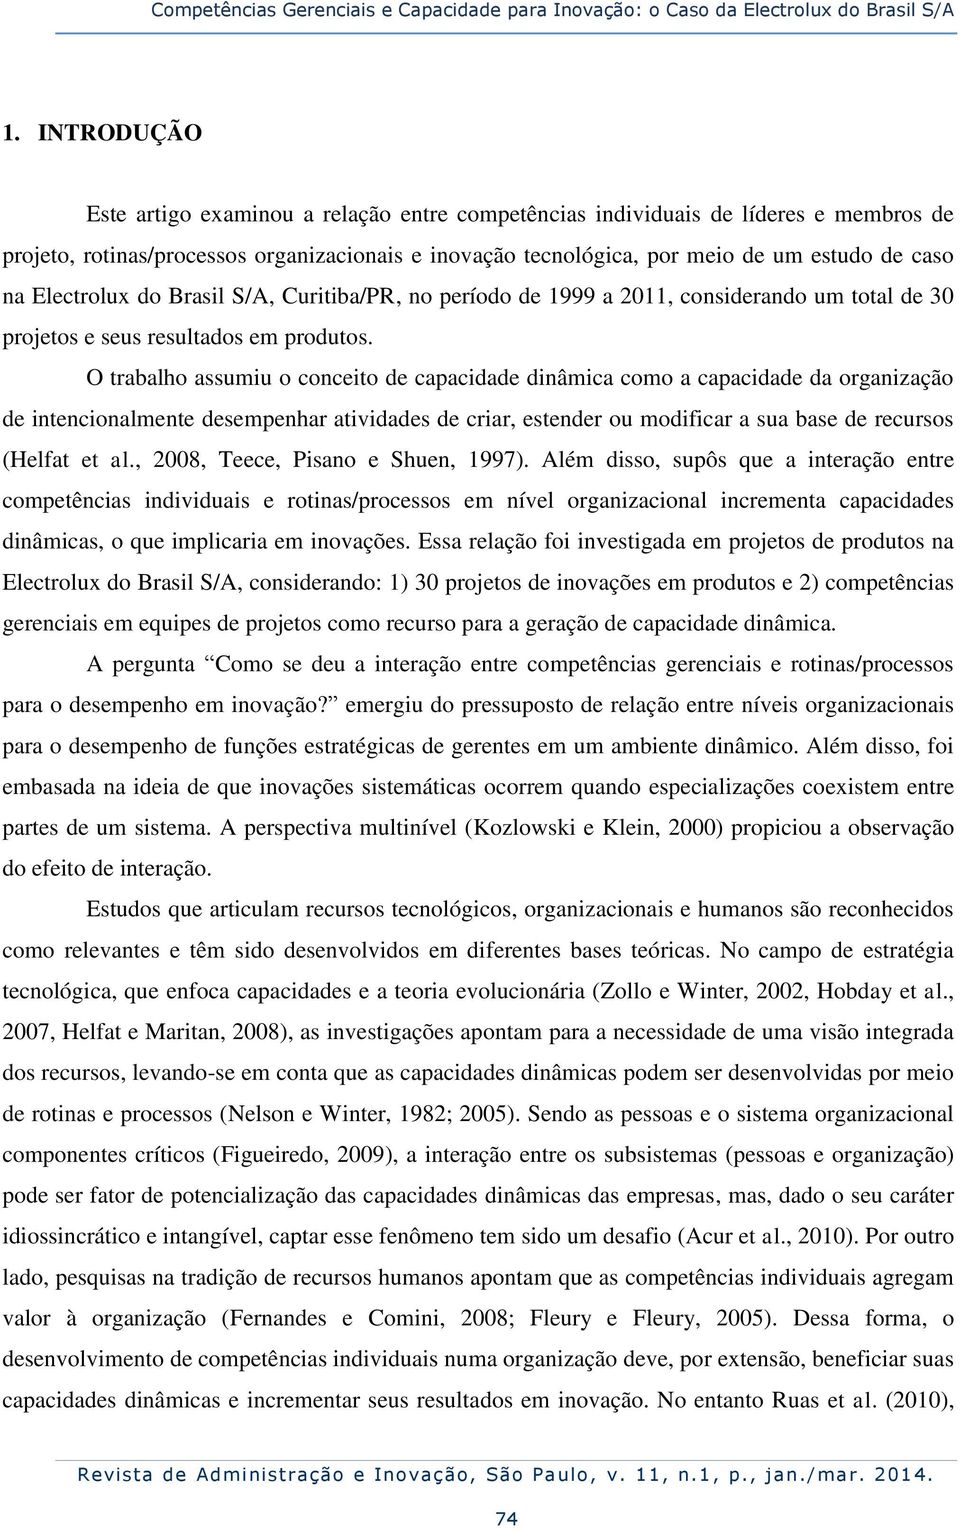 Electrolux do Brasil S/A, Curitiba/PR, no período de 1999 a 2011, considerando um total de 30 projetos e seus resultados em produtos.